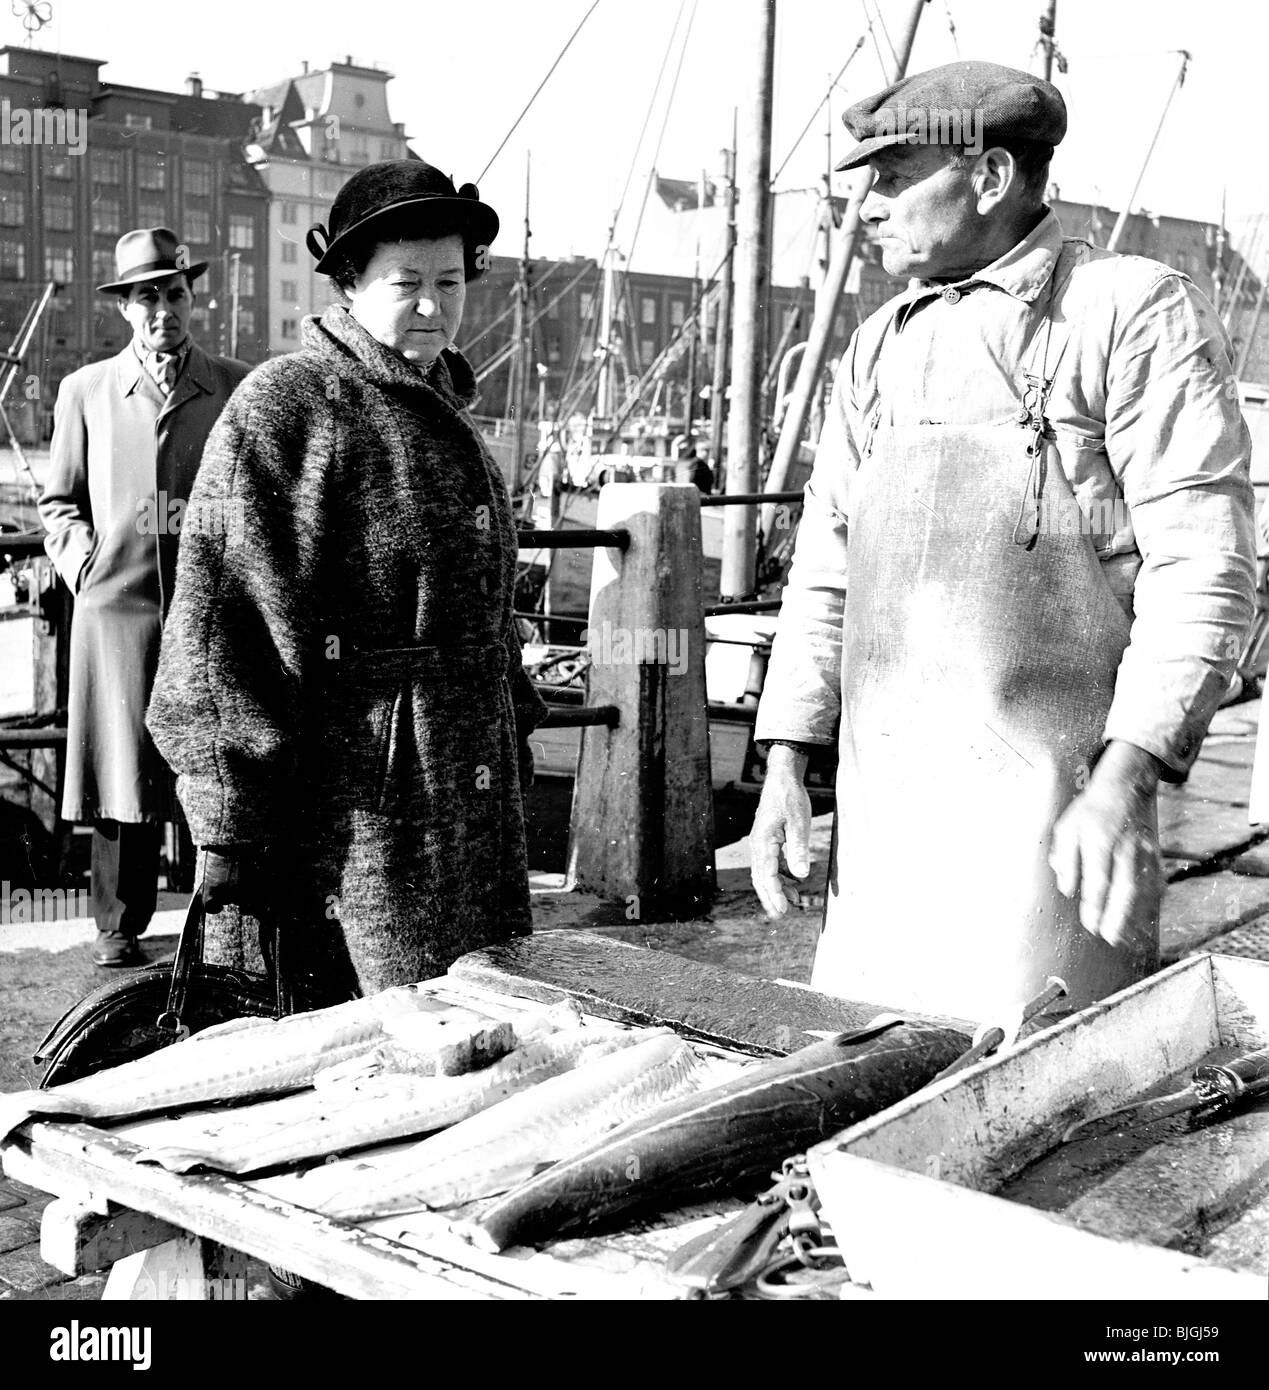 Années 1950, Bergen, Norvège. Dans cette photographie par J Allan en argent comptant, une dame bien habillés étudie le poisson frais disponible sur un étal. Banque D'Images